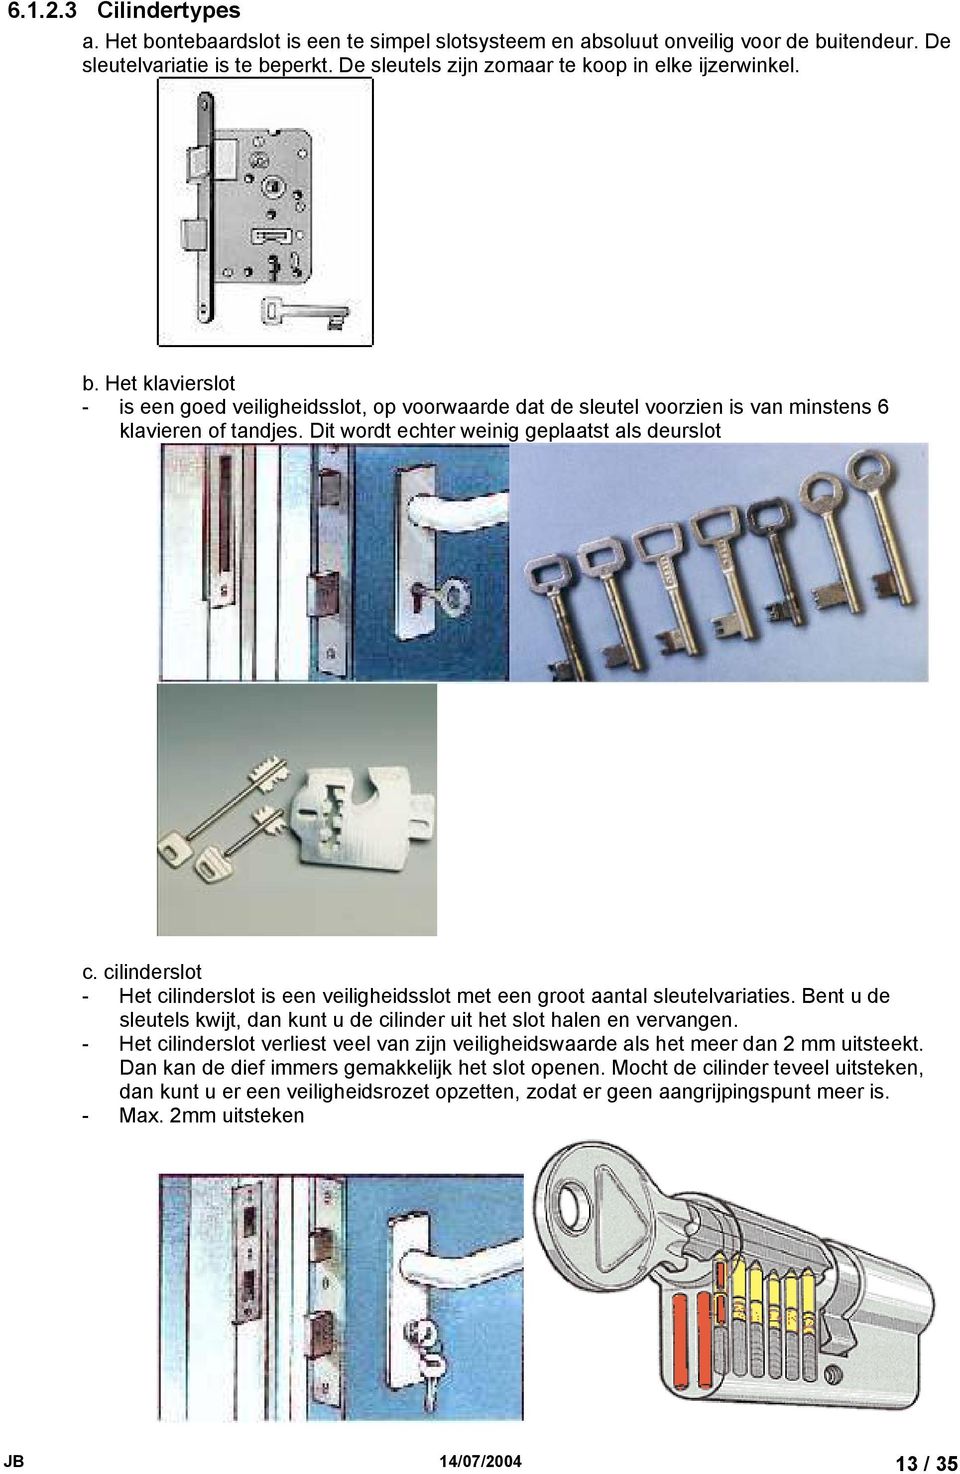 cilinderslot - Het cilinderslot is een veiligheidsslot met een groot aantal sleutelvariaties. Bent u de sleutels kwijt, dan kunt u de cilinder uit het slot halen en vervangen.